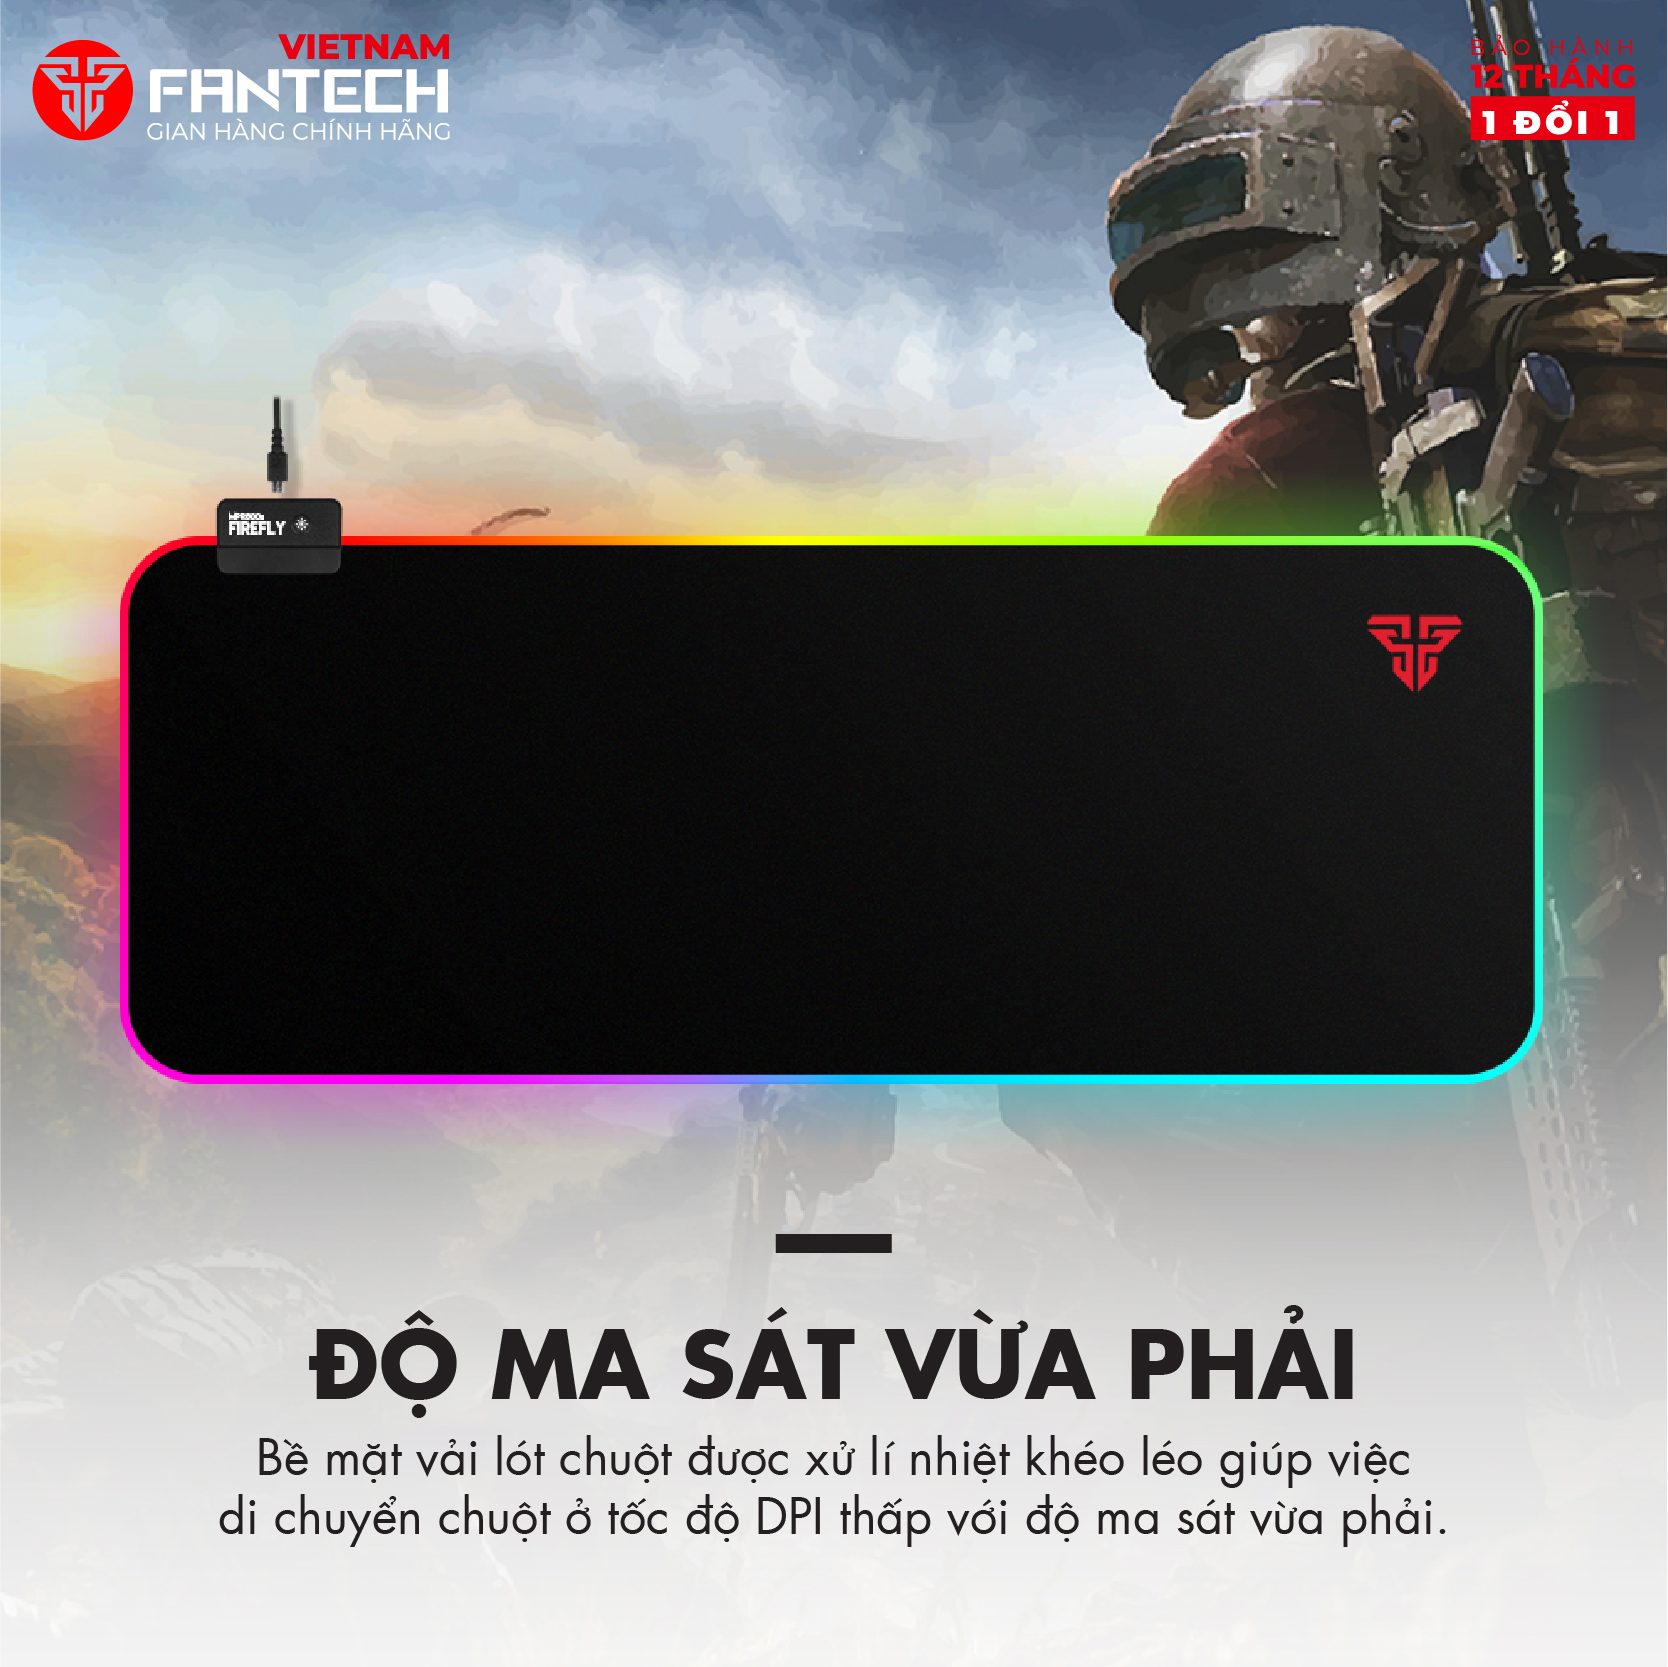 Miếng Lót Chuột Gaming Cỡ Lớn 80 x 30 x 0.4mm Fullsized FANTECH MPR800s FIREFLY Viền LED RGB 7 Chế...